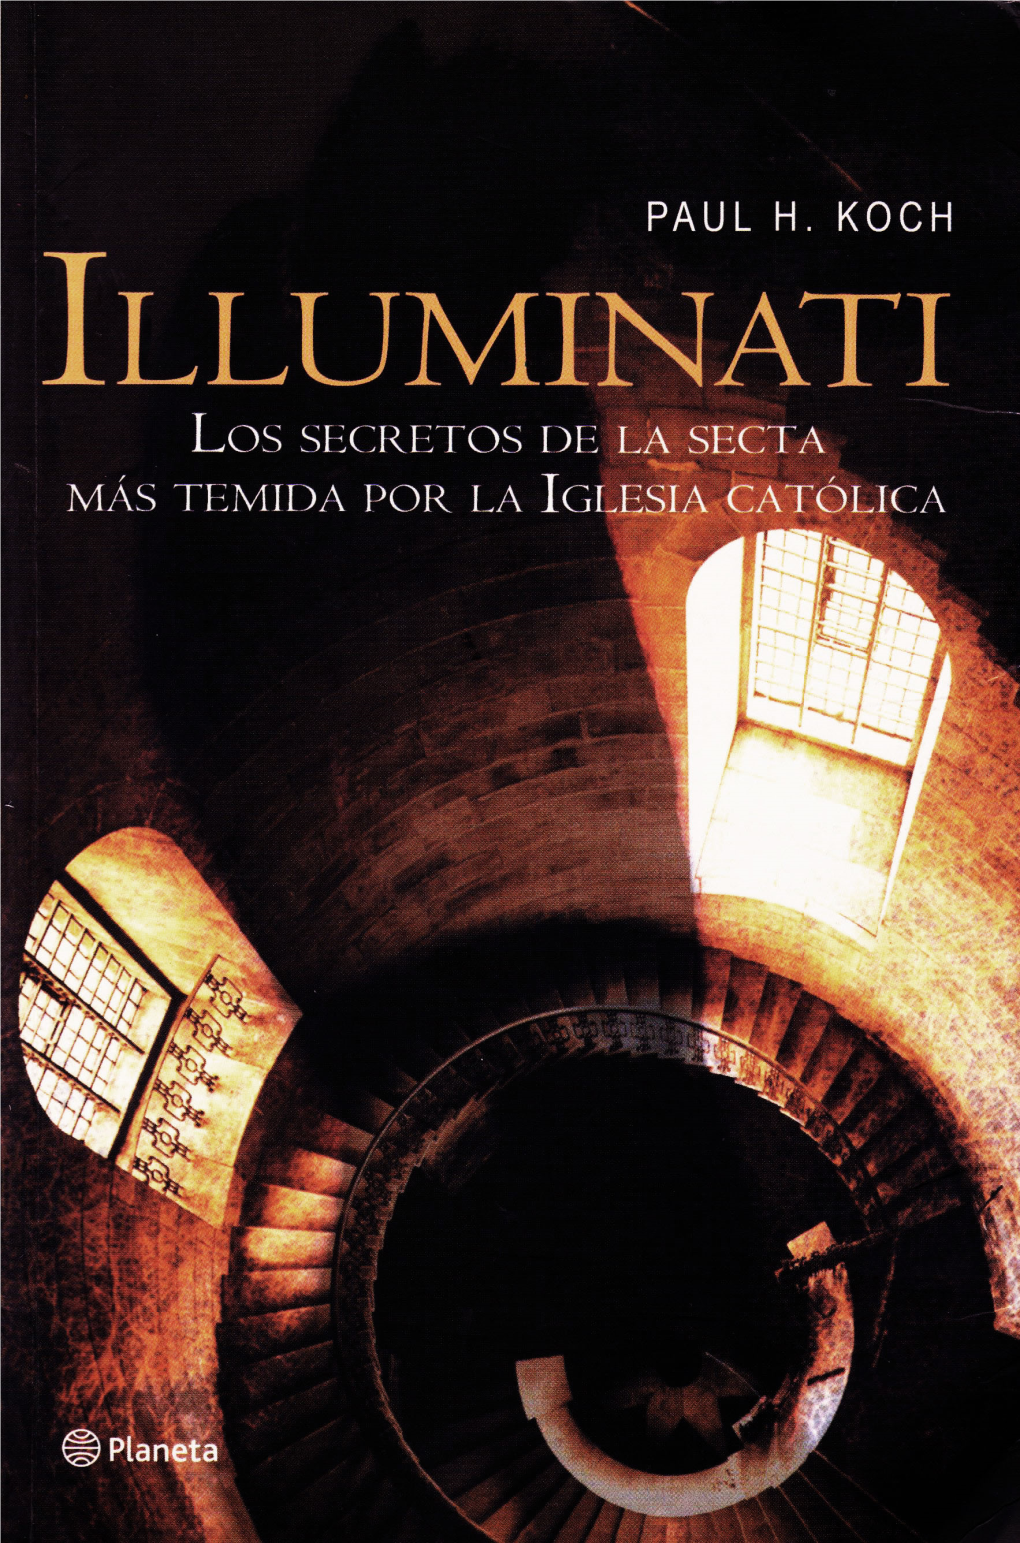 Illuminati-Paul-Koch